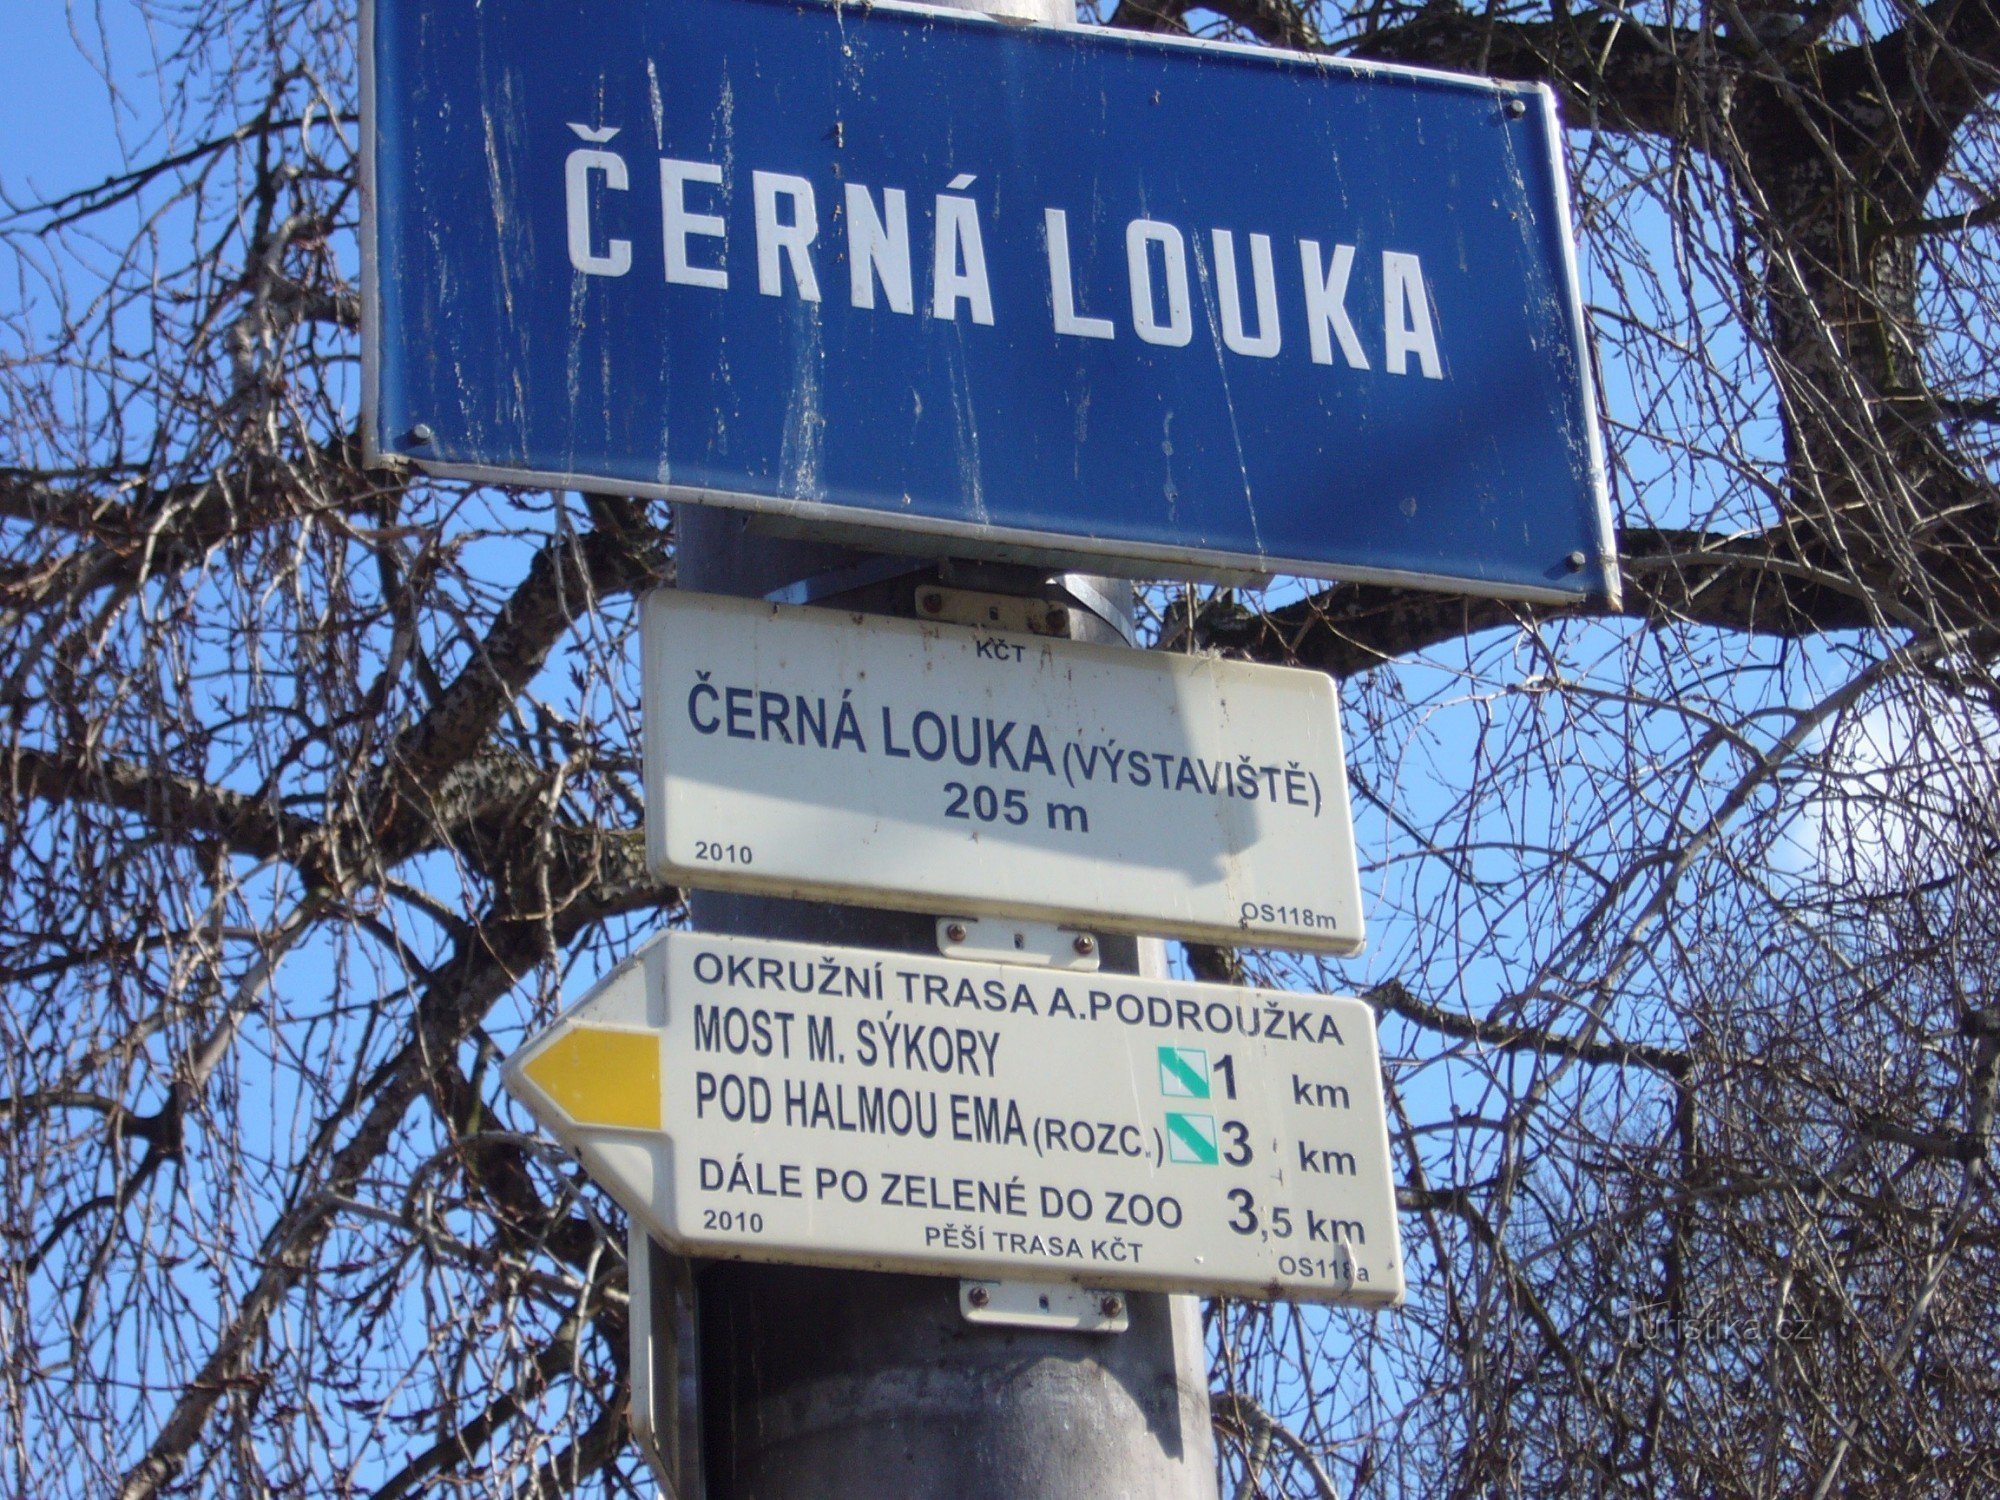 Biển chỉ dẫn Ostrava Černá luuka